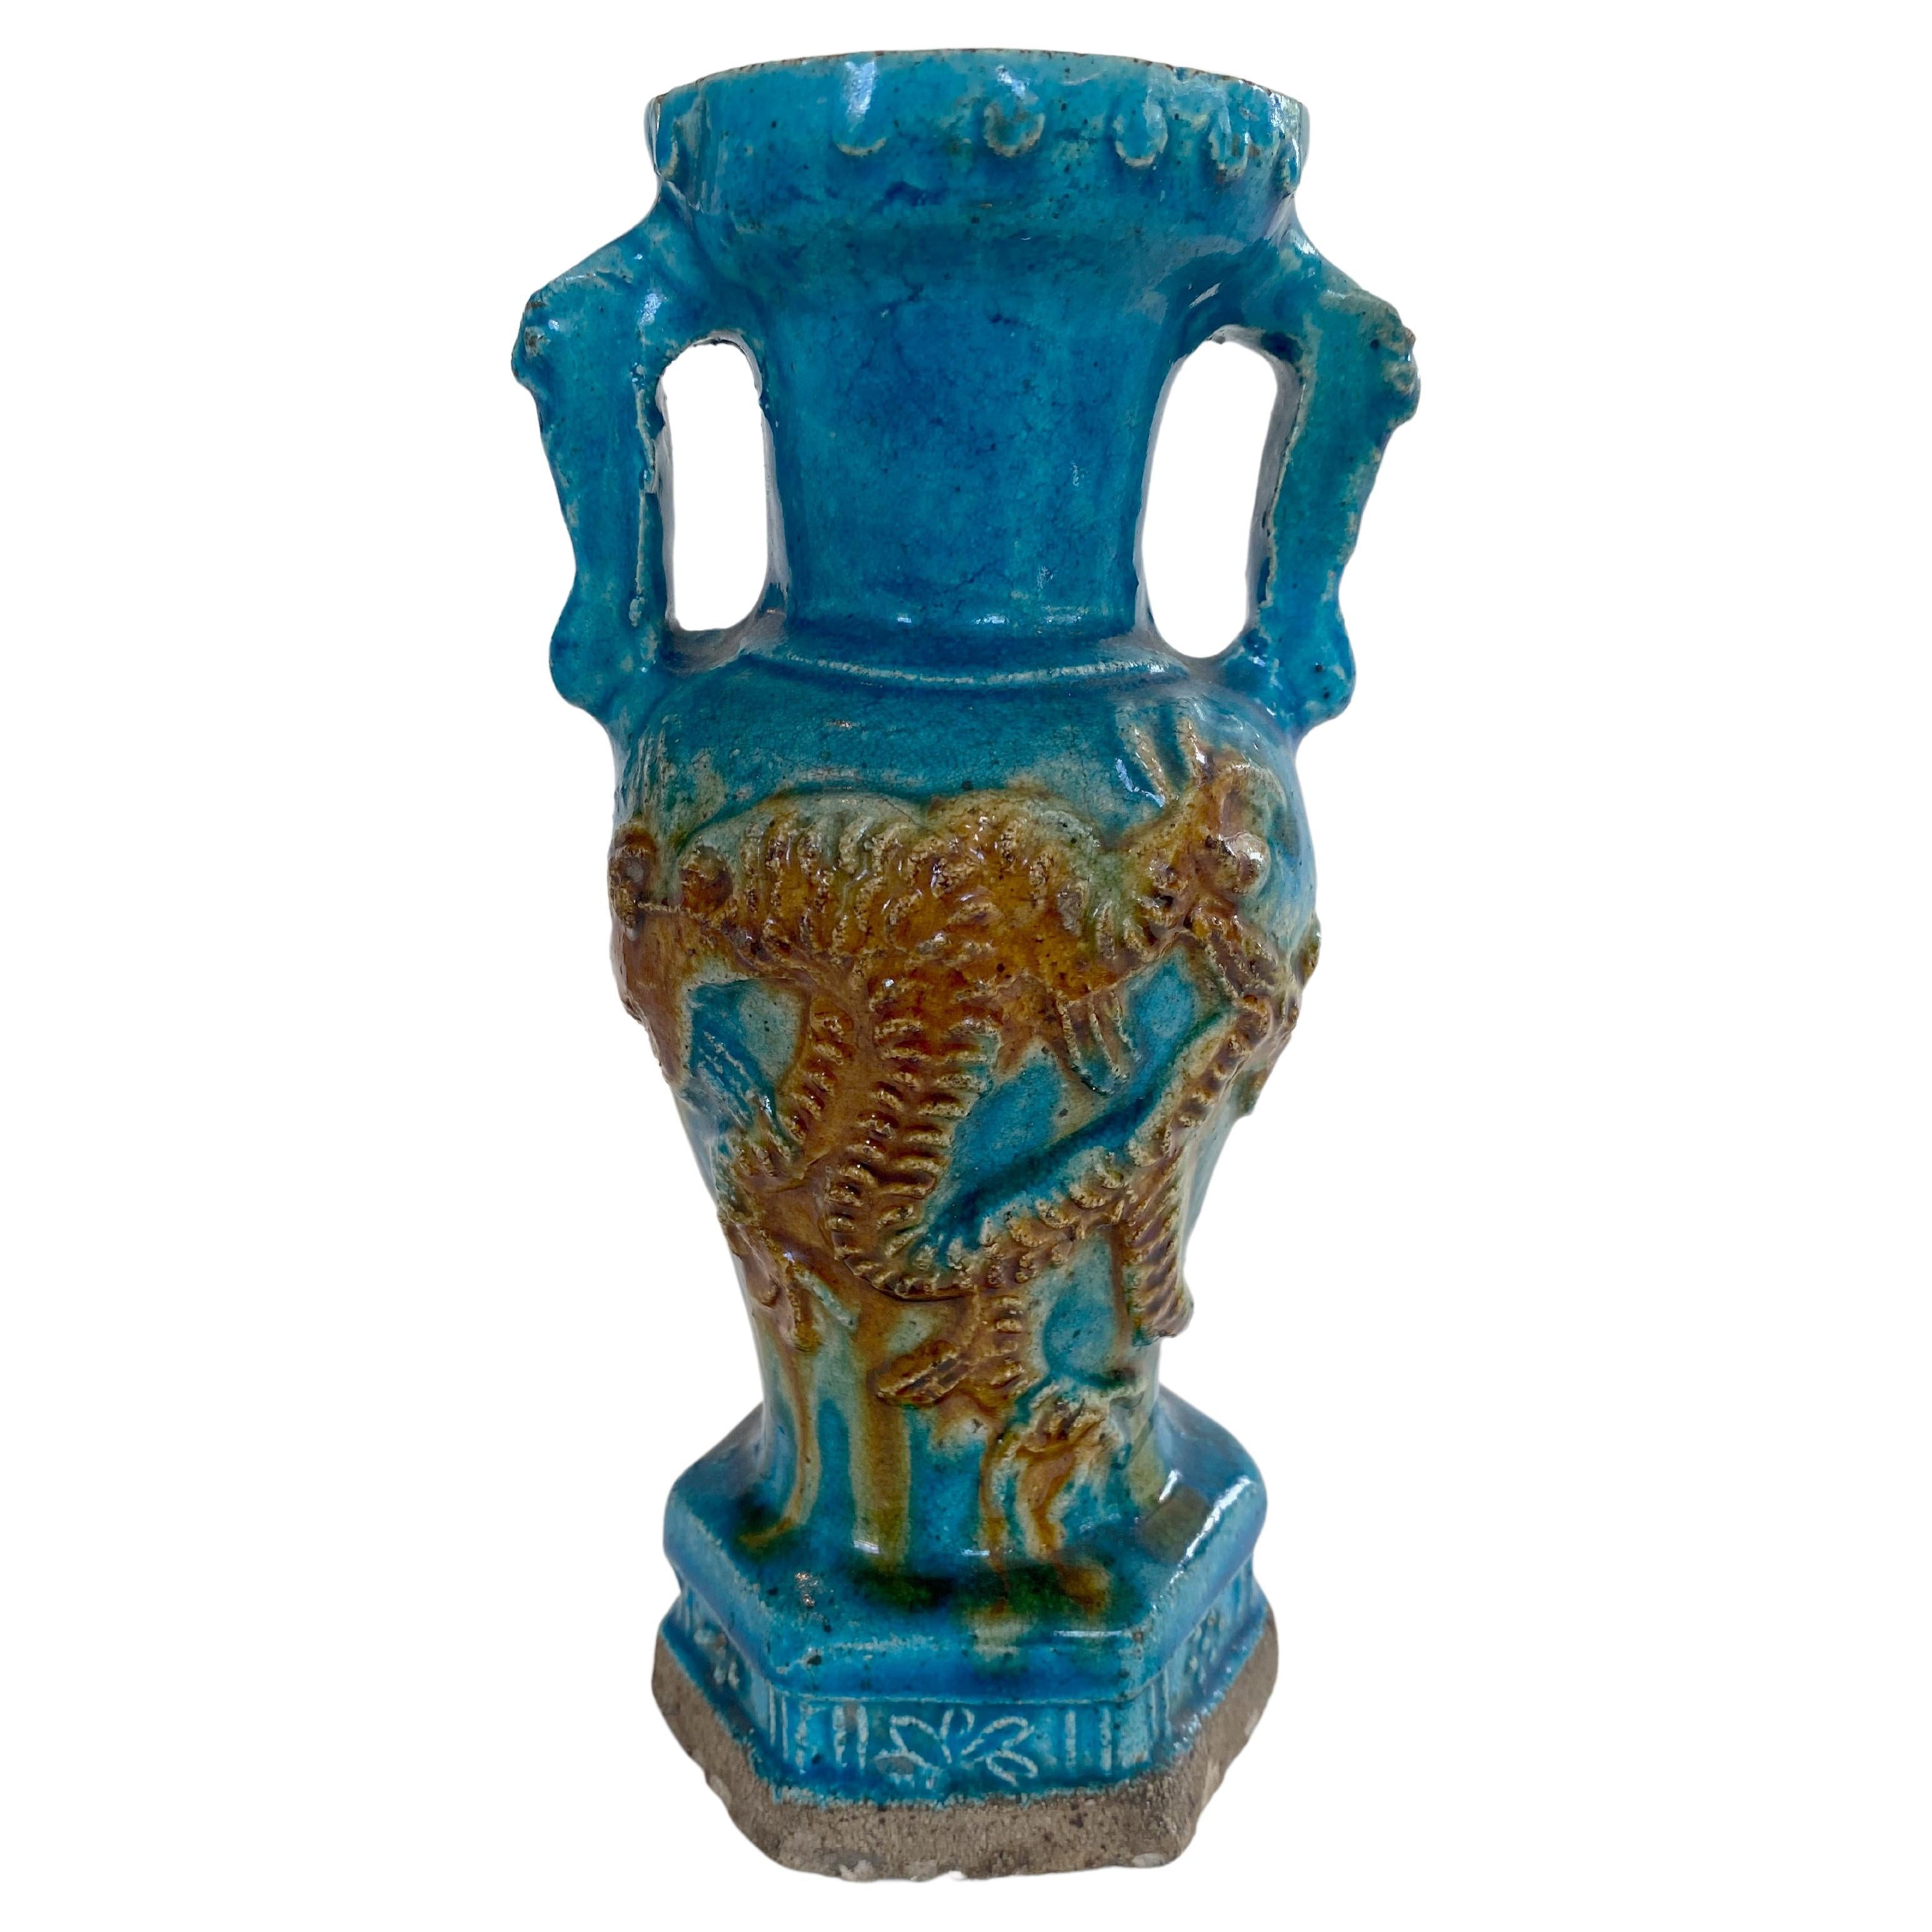 Vase de la dynastie Ming à glaçure turquoise vibrante